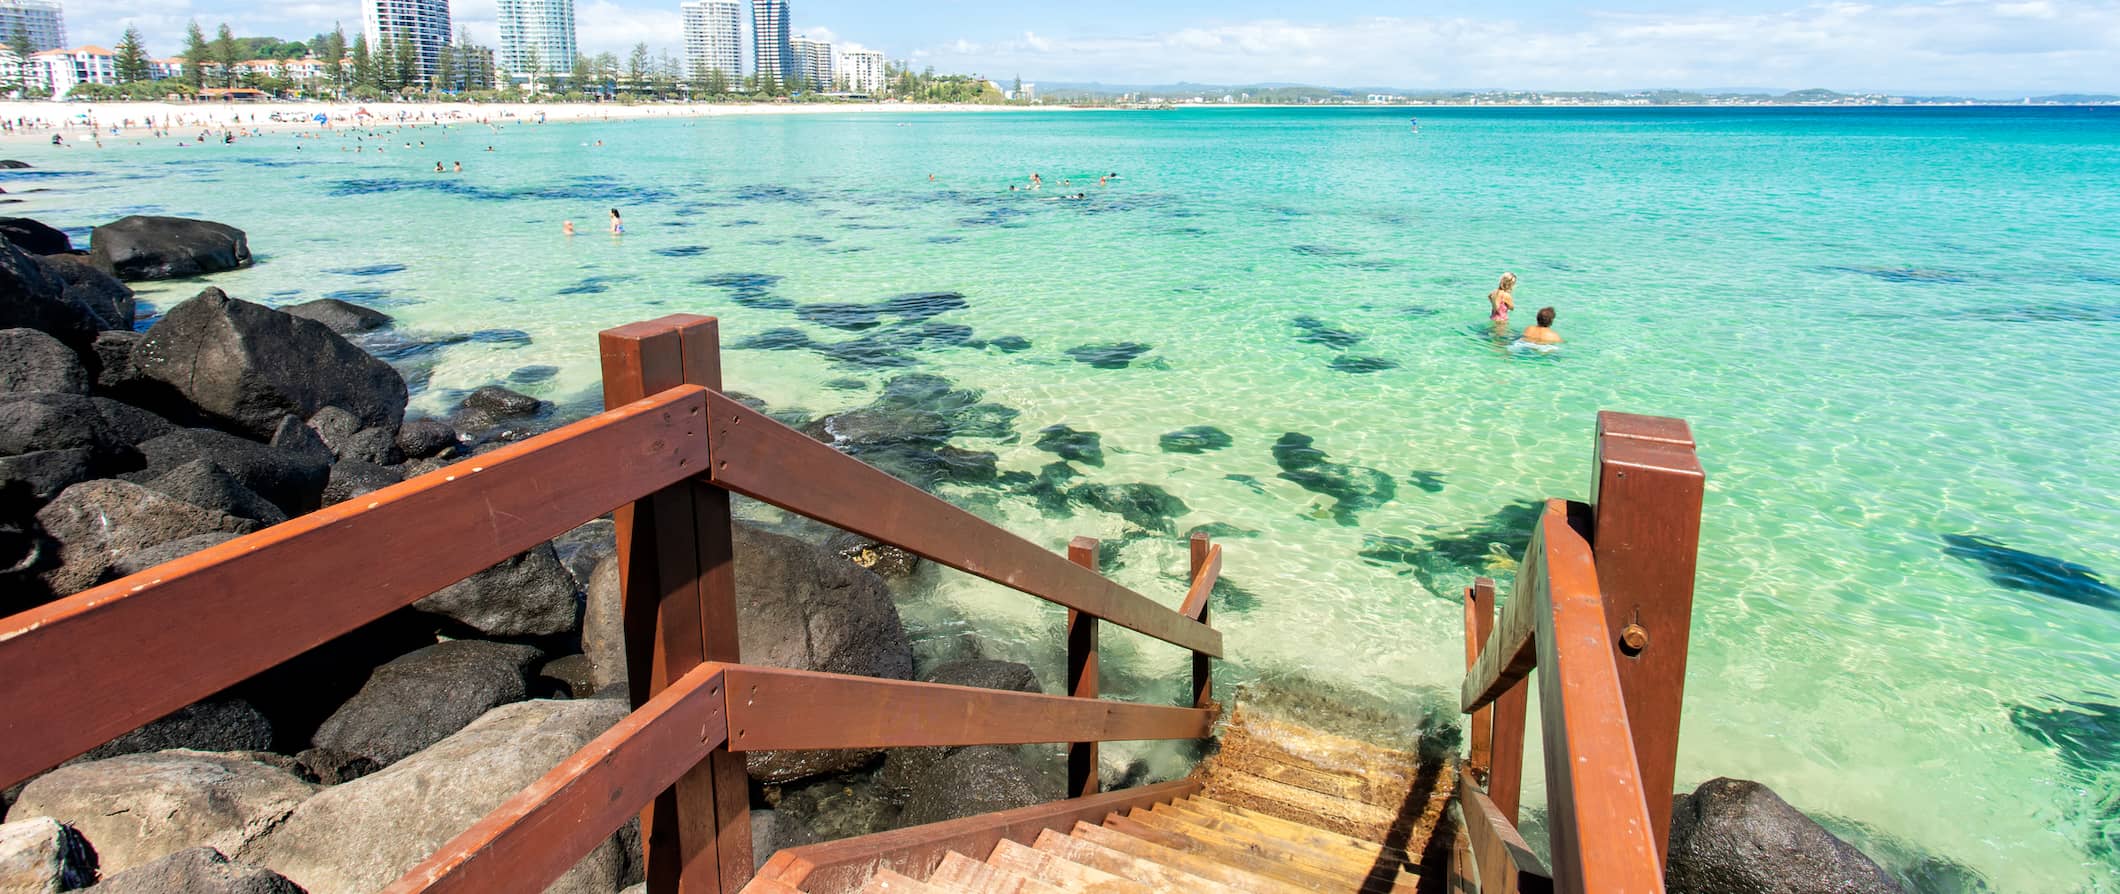 Pessoas nadam nas águas cristalinas de Gold Coast, na Austrália, perto de uma pequena escadaria de madeira com a cidade ao fundo.